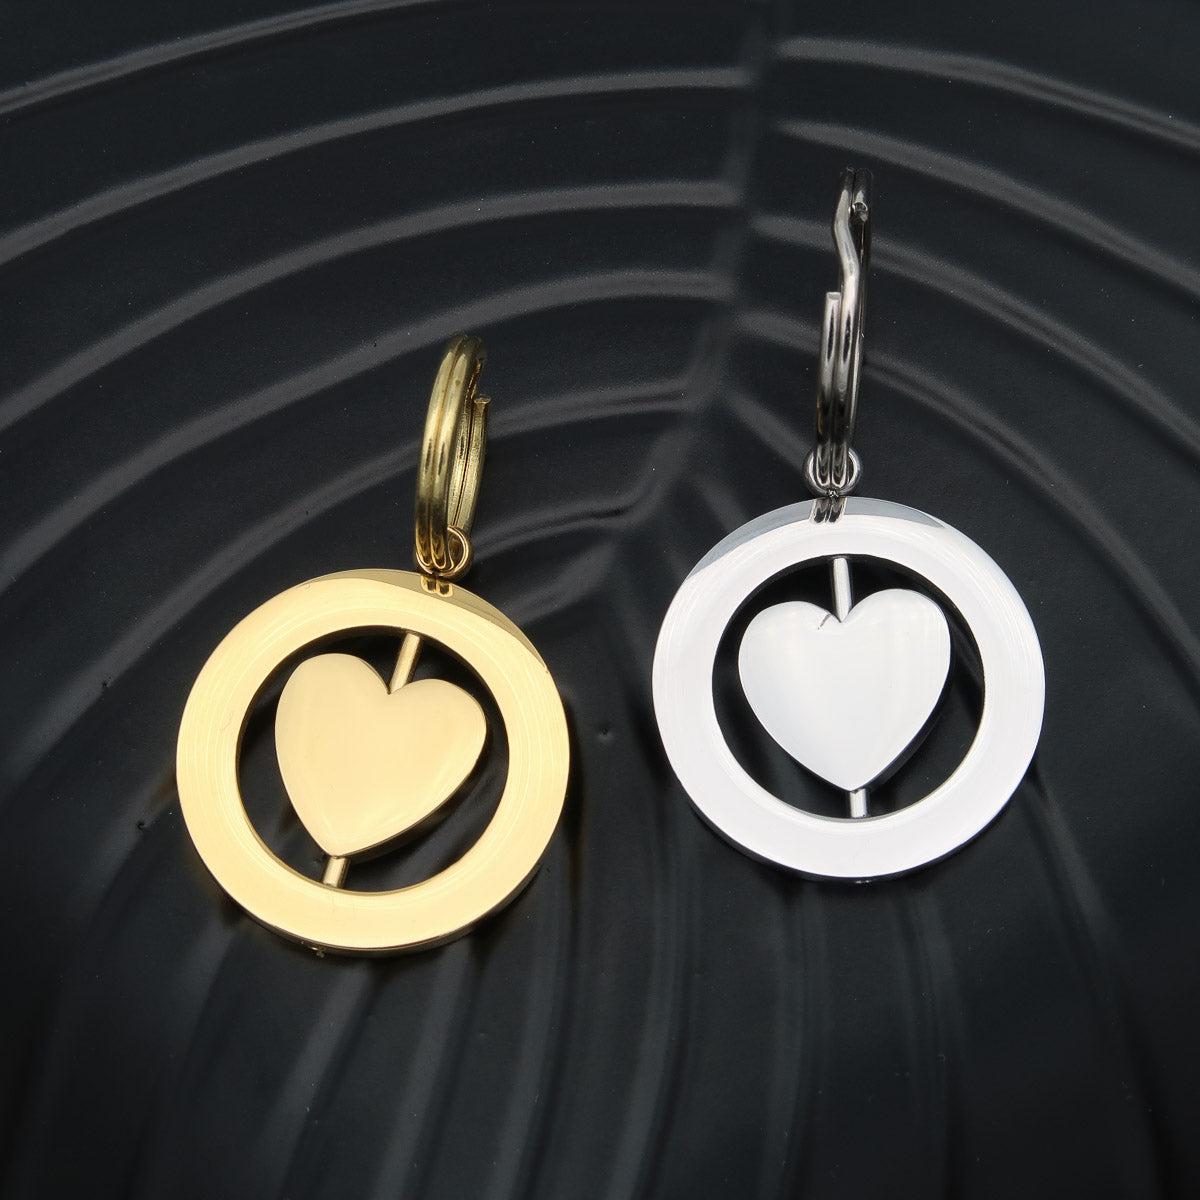 Porte-clés "Spinning heart" avec gravure sur les deux faces